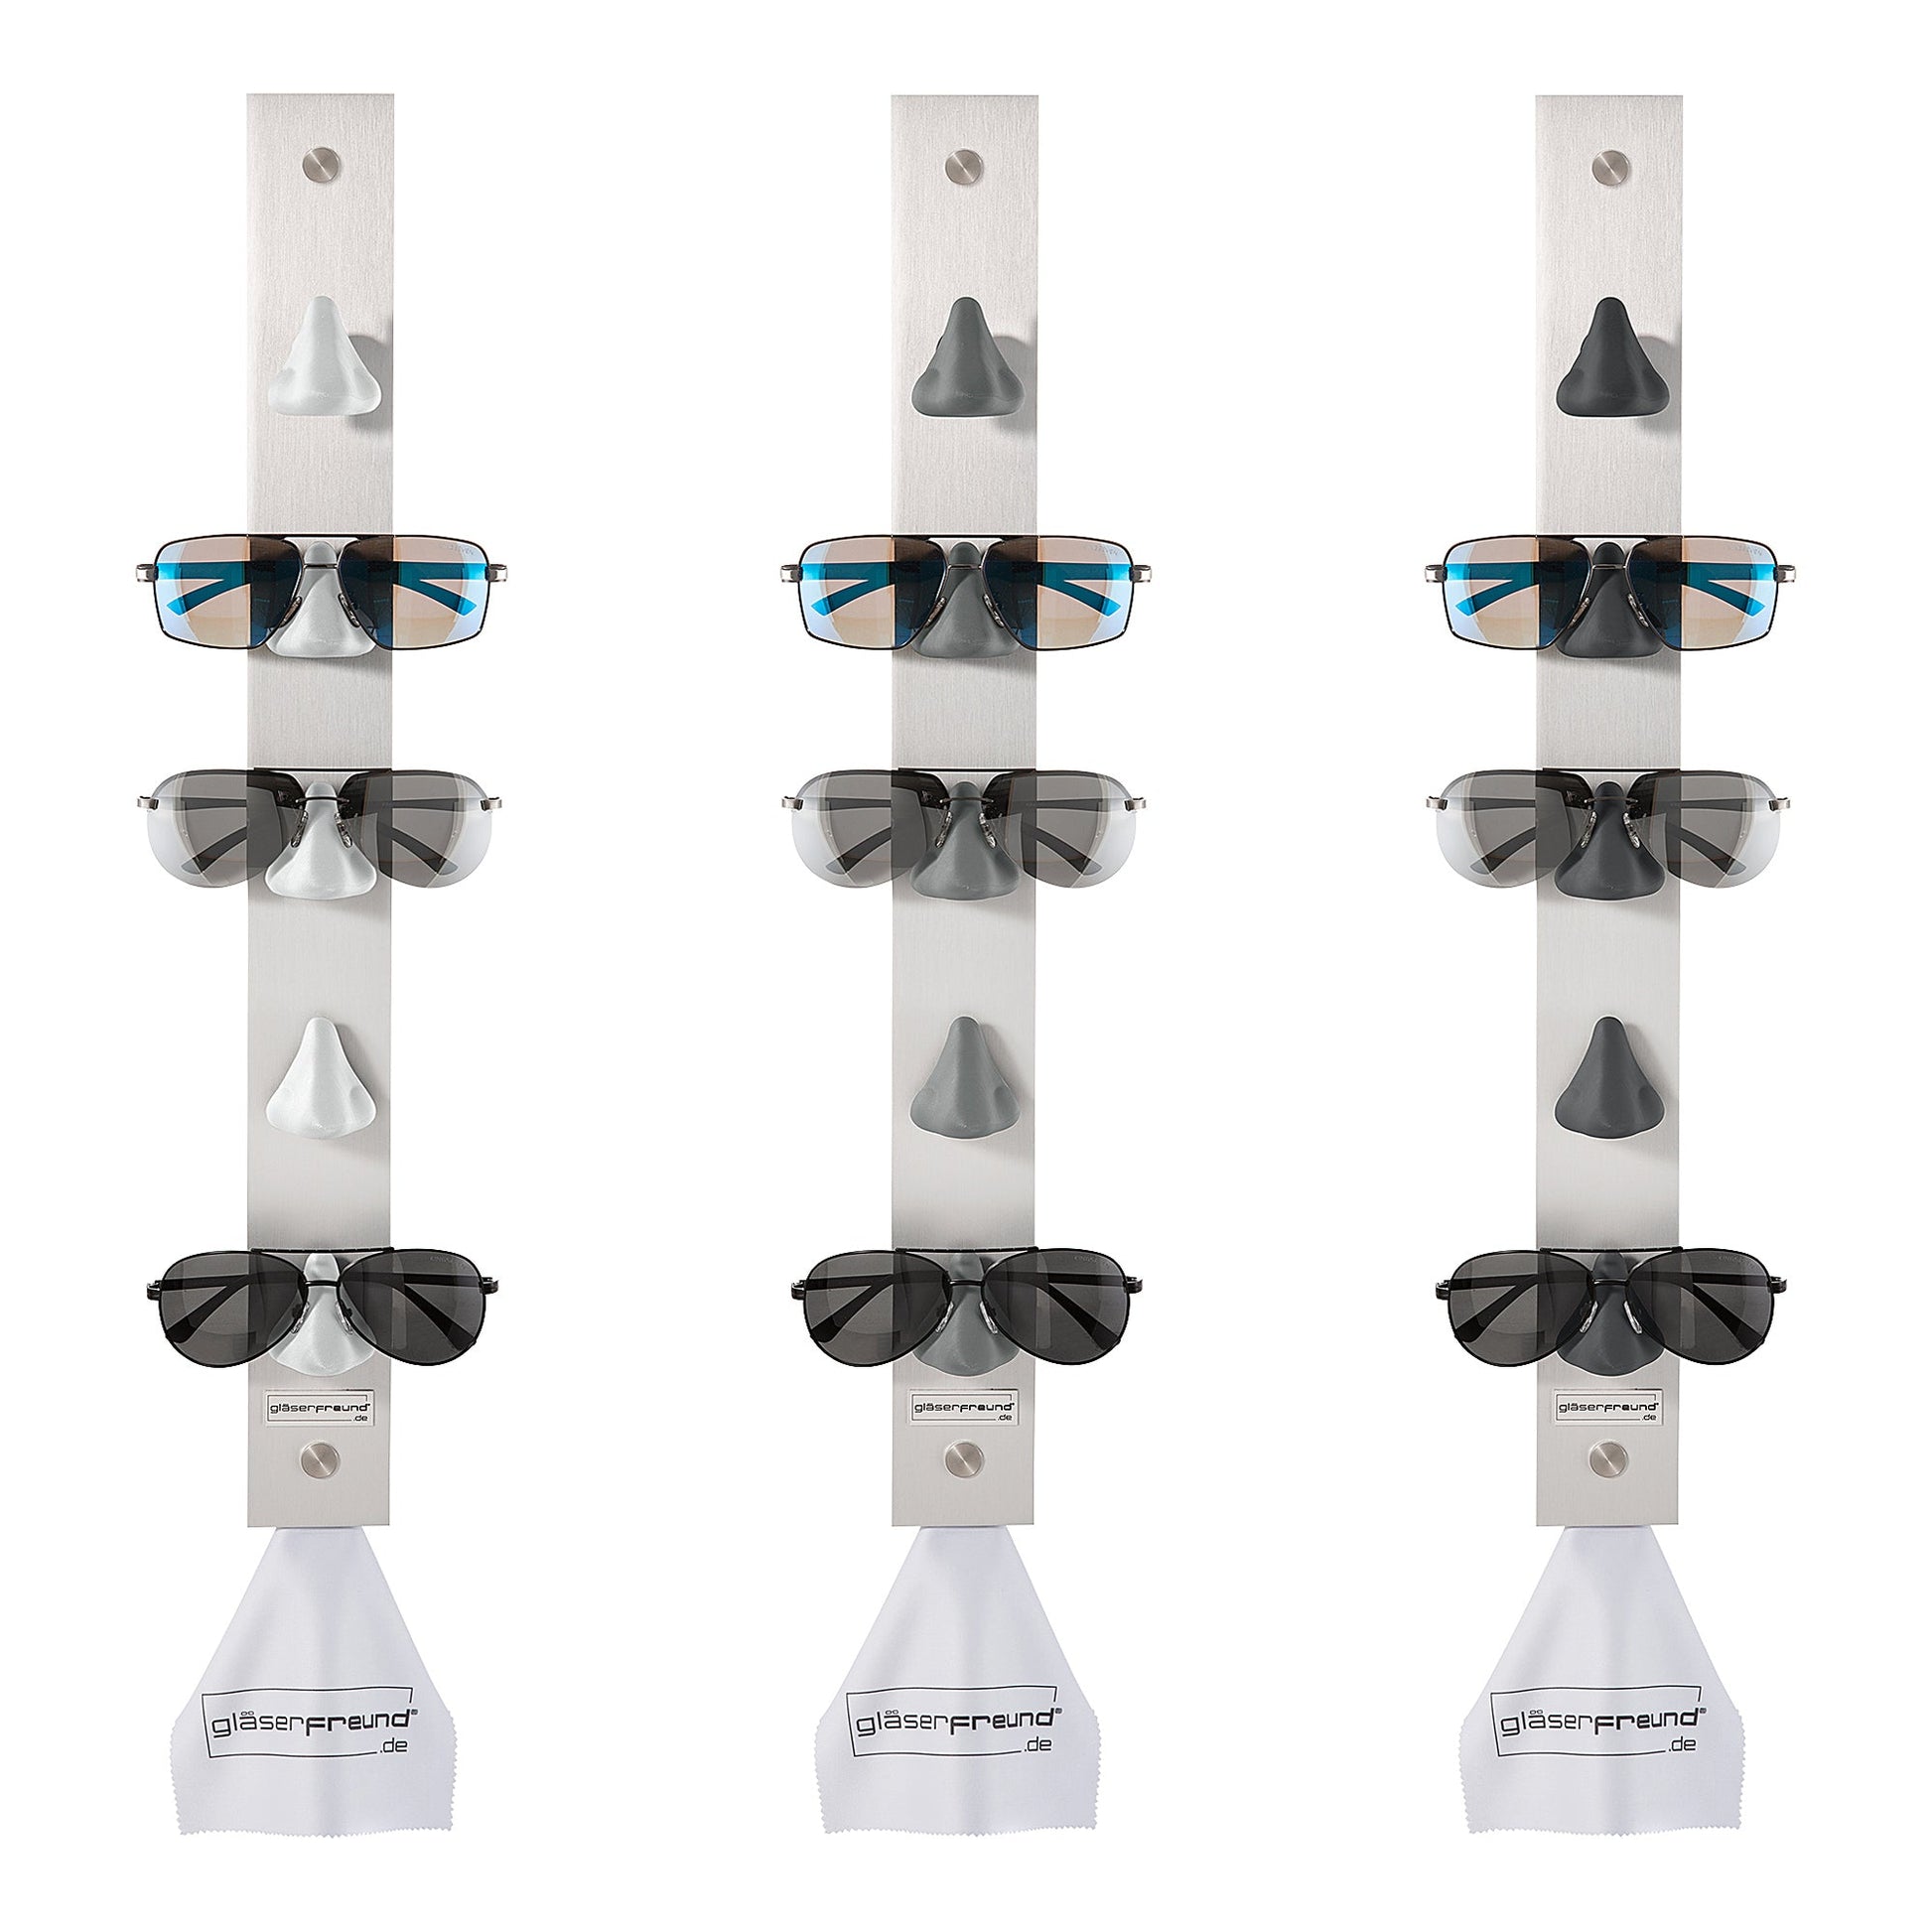 Calvin Brillenorganizer aus Alu für fünf Brillen – gläserfreund®